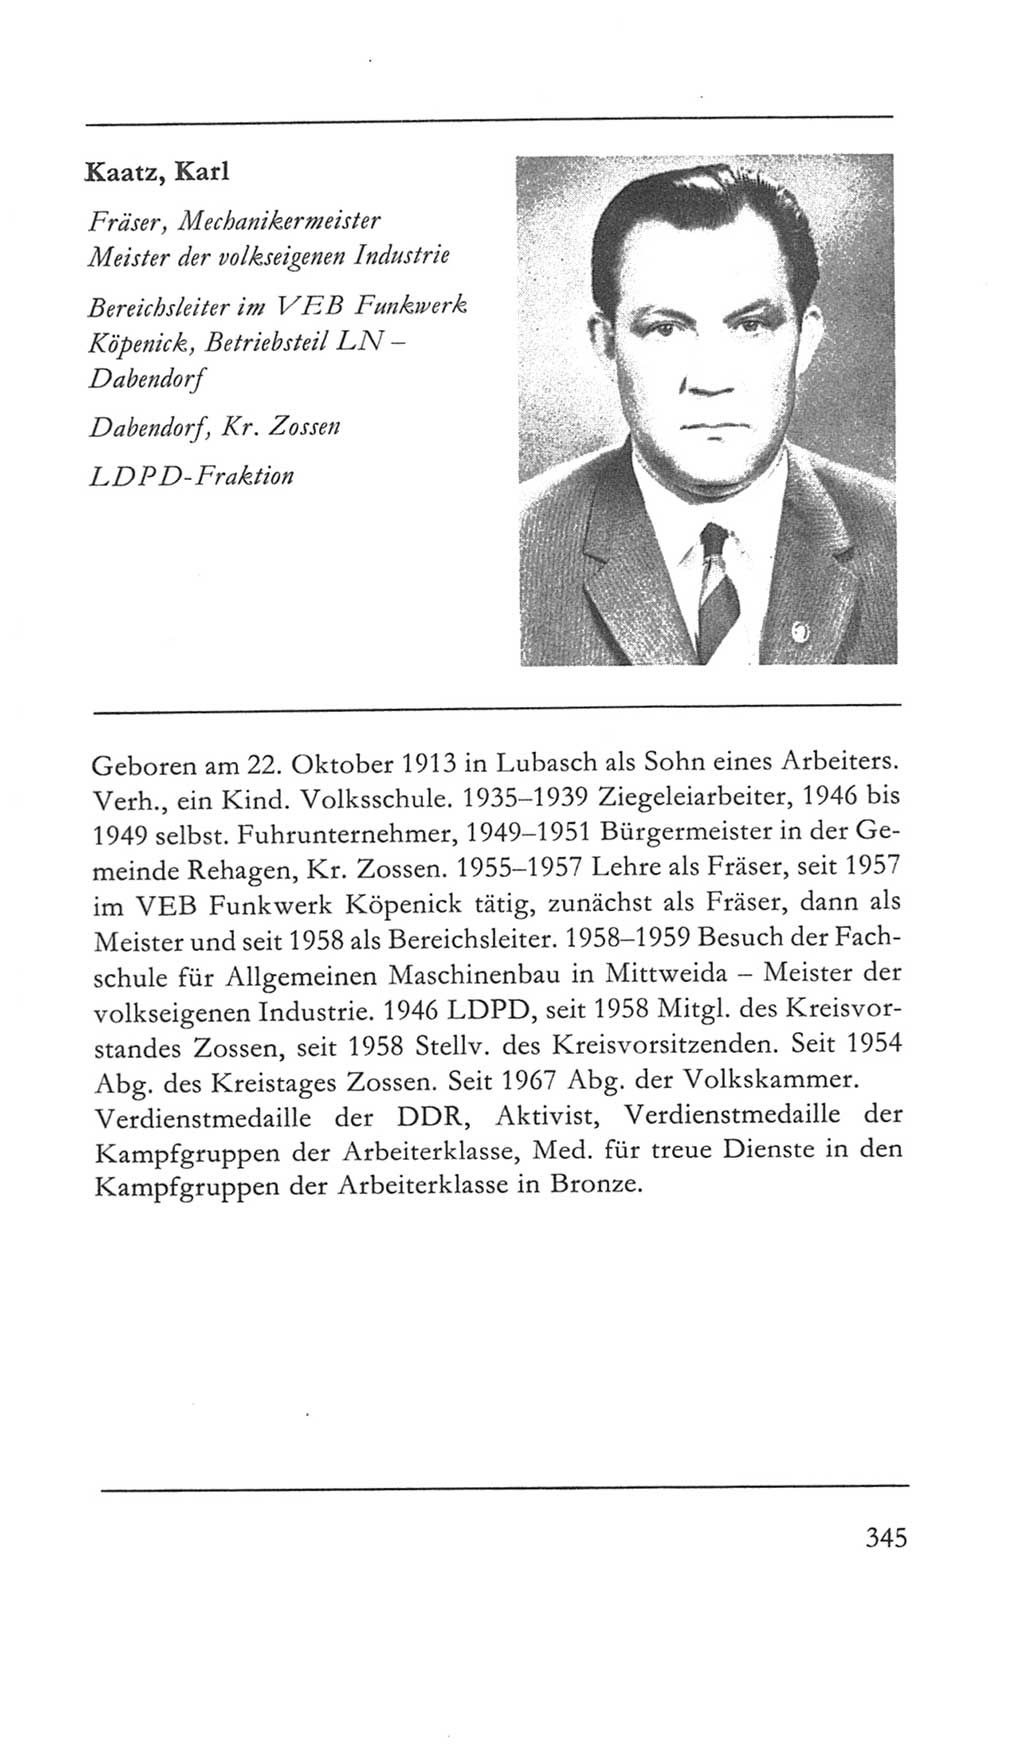 Volkskammer (VK) der Deutschen Demokratischen Republik (DDR) 5. Wahlperiode 1967-1971, Seite 345 (VK. DDR 5. WP. 1967-1971, S. 345)